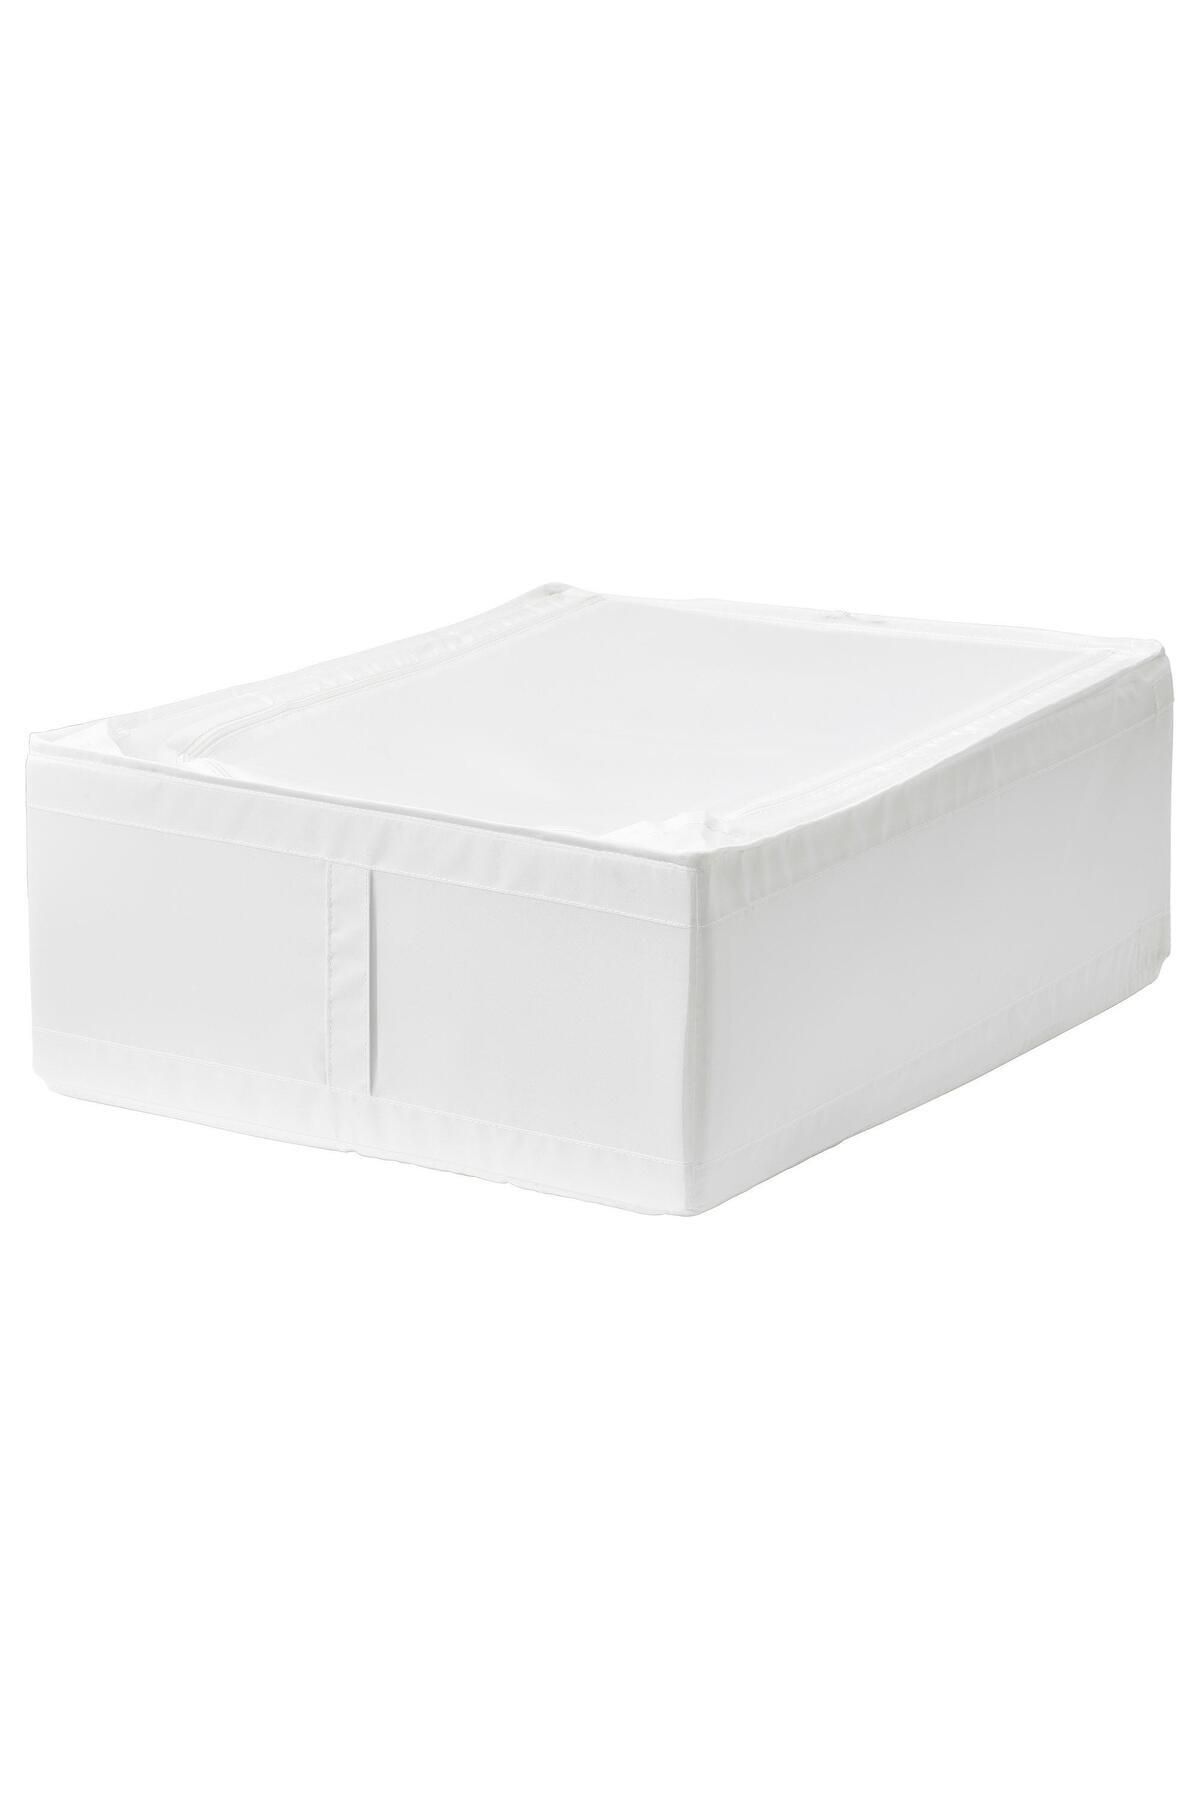 IKEA Katlanabilir Saklama Kutusu Hurç Ölçü 44x55x19 Cm MeridyenDukkan Beyaz Renk-Düzenleme Kutusu